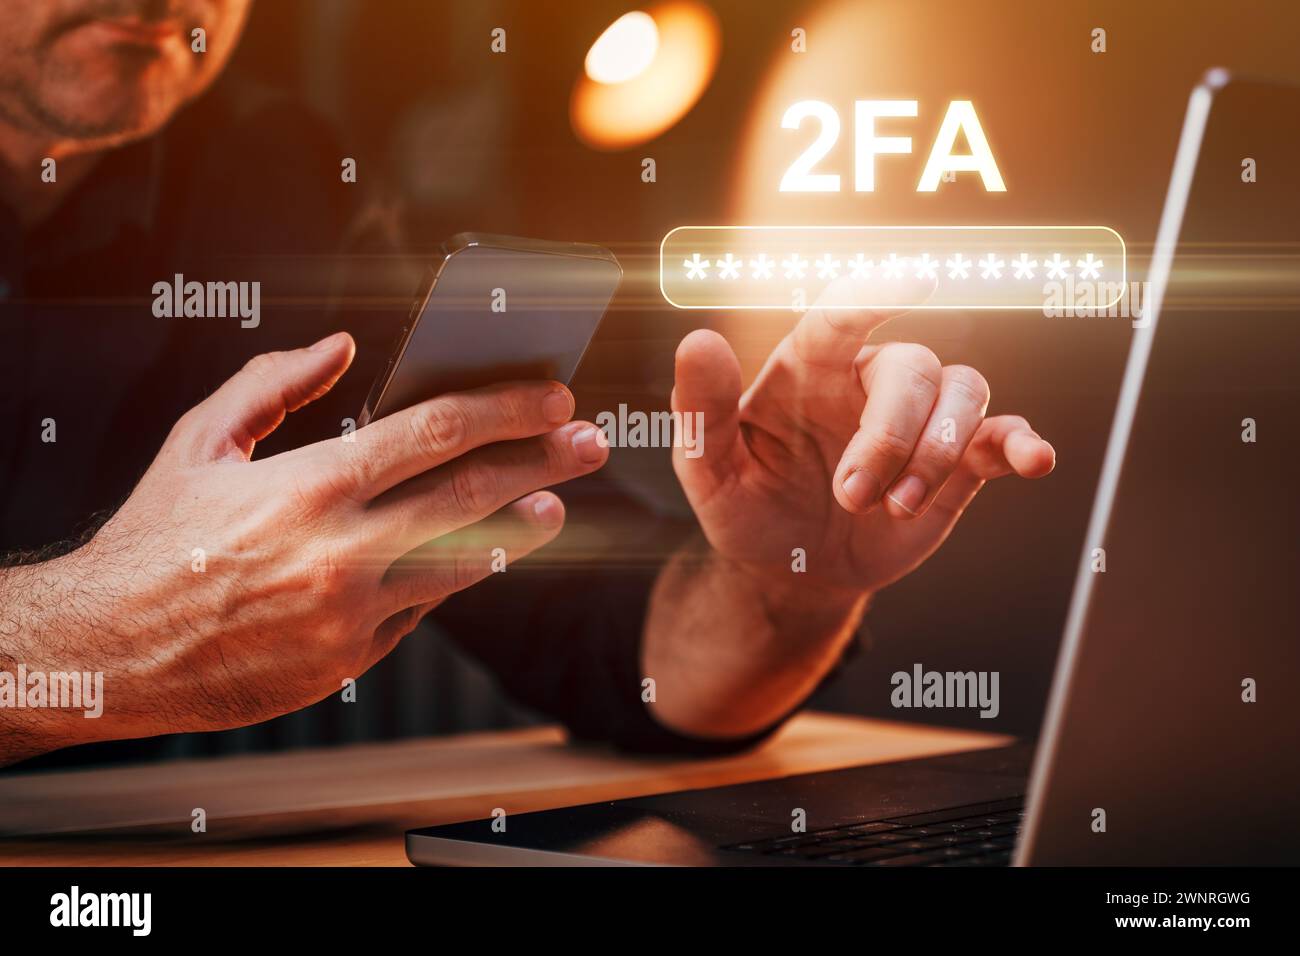 Authentification à deux facteurs 2FA, homme d'affaires utilisant le téléphone mobile et l'ordinateur portable pour se connecter à un compte en ligne, focus sélectif Banque D'Images